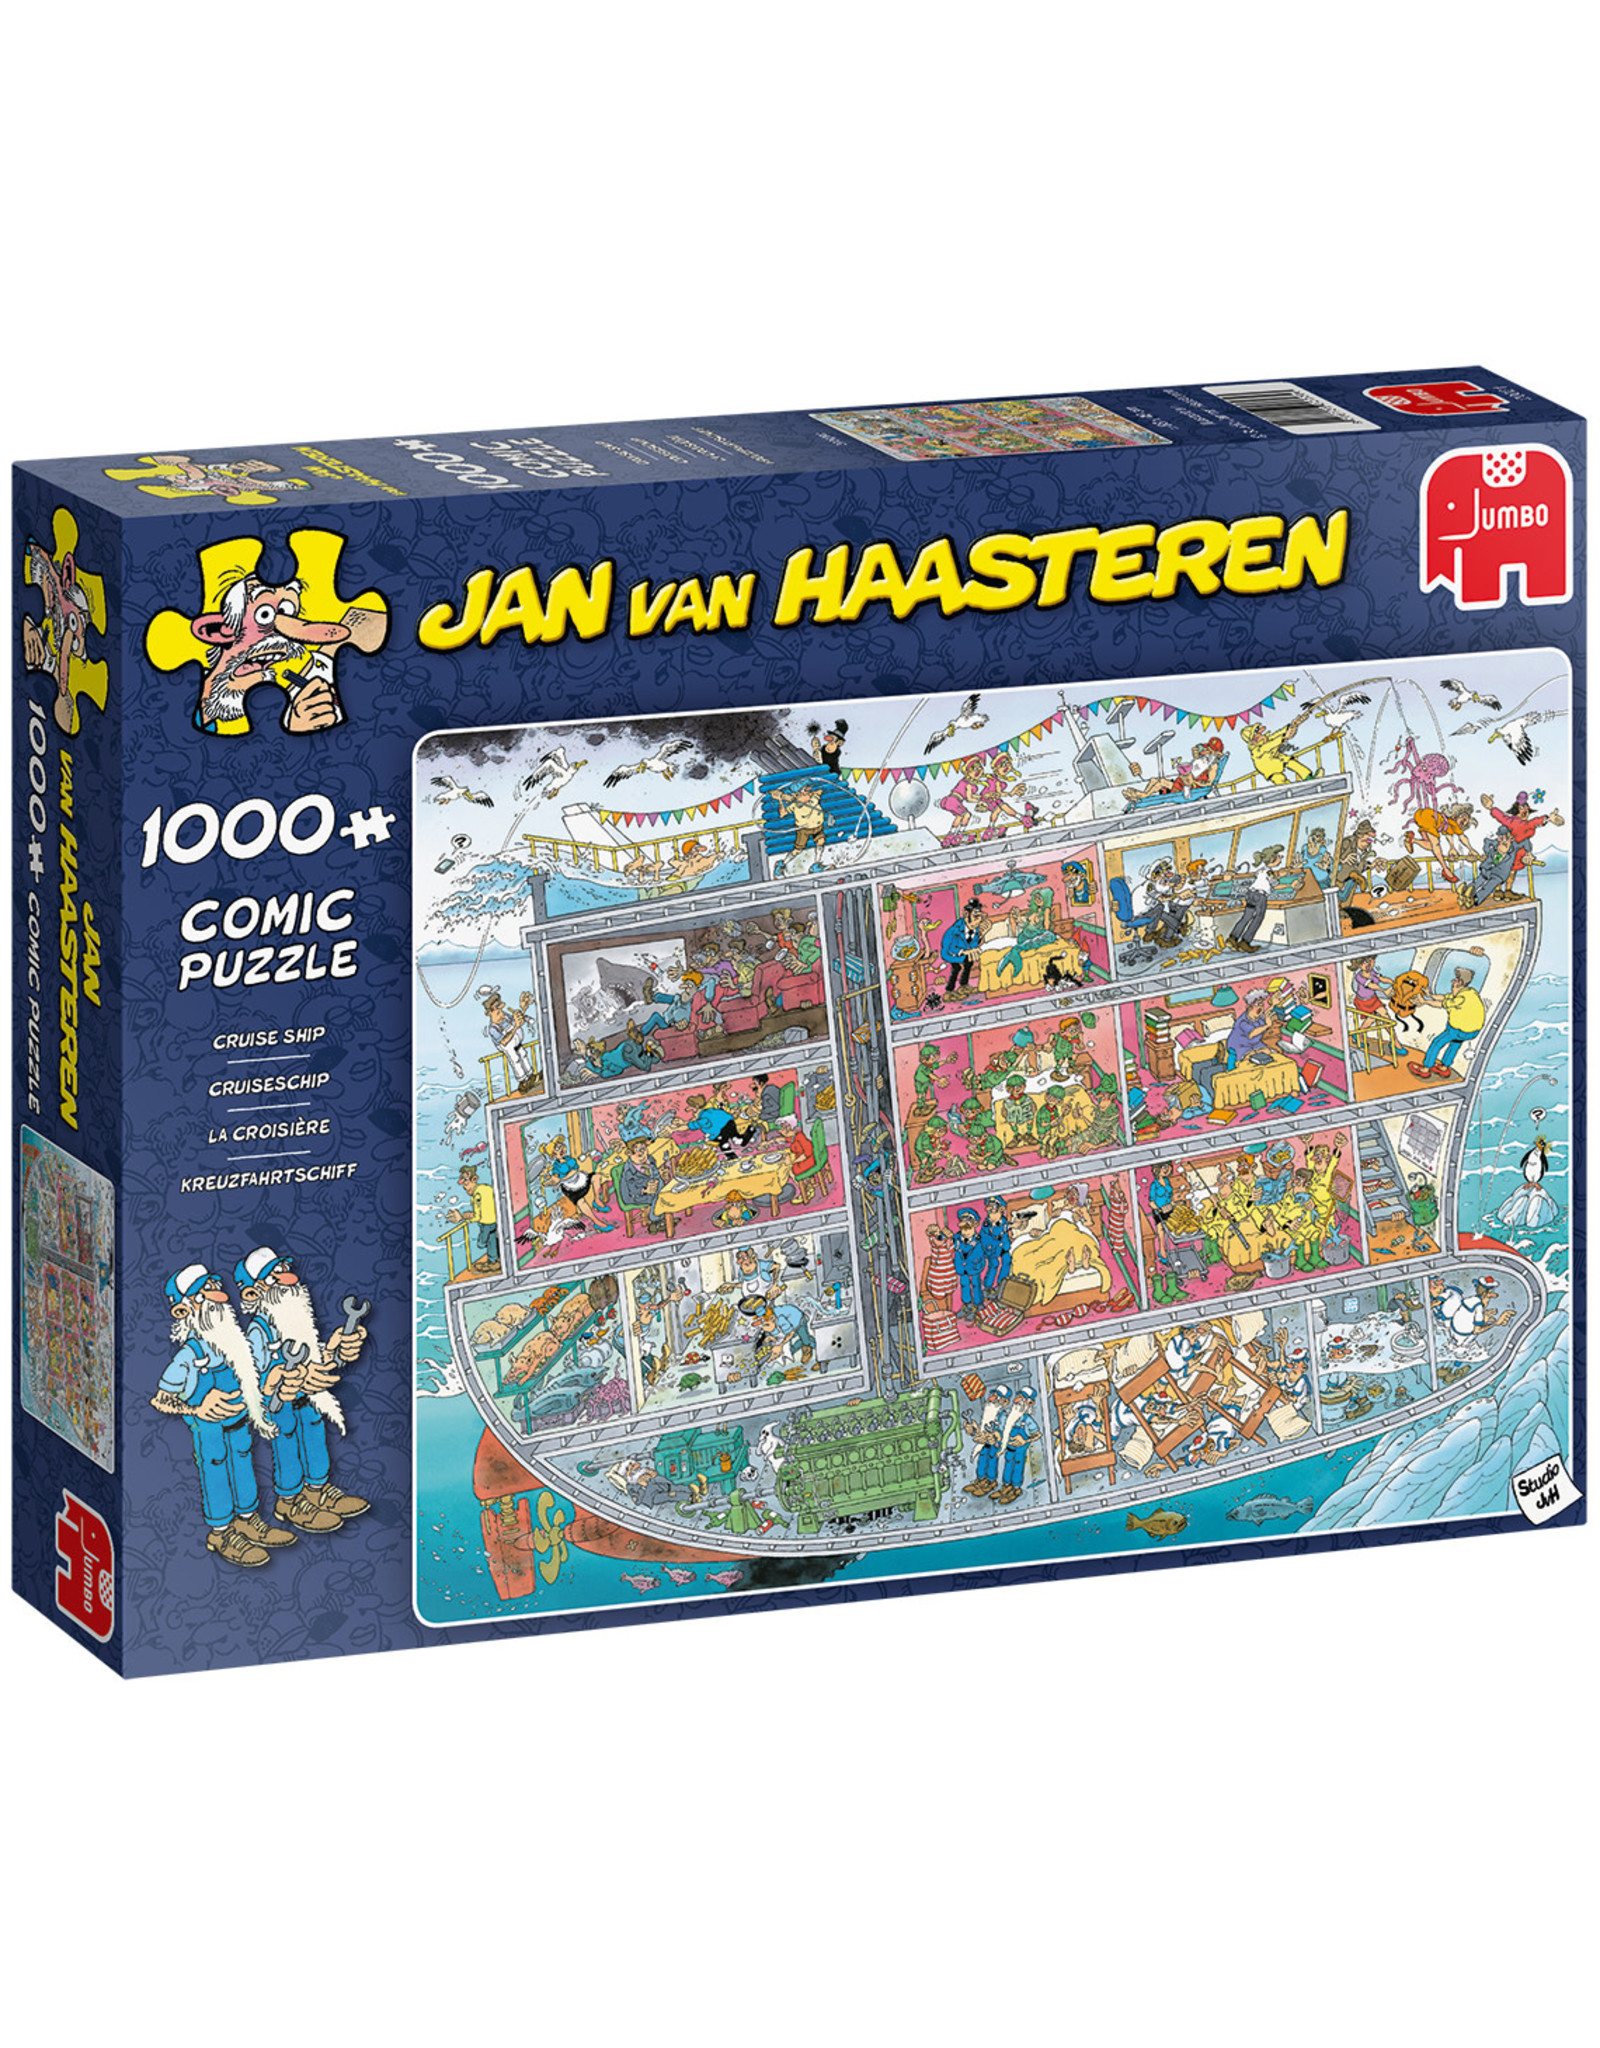 Jumbo Jumbo puzzel Jan van Haasteren 20021 Cruiseschip 1000 stukjes